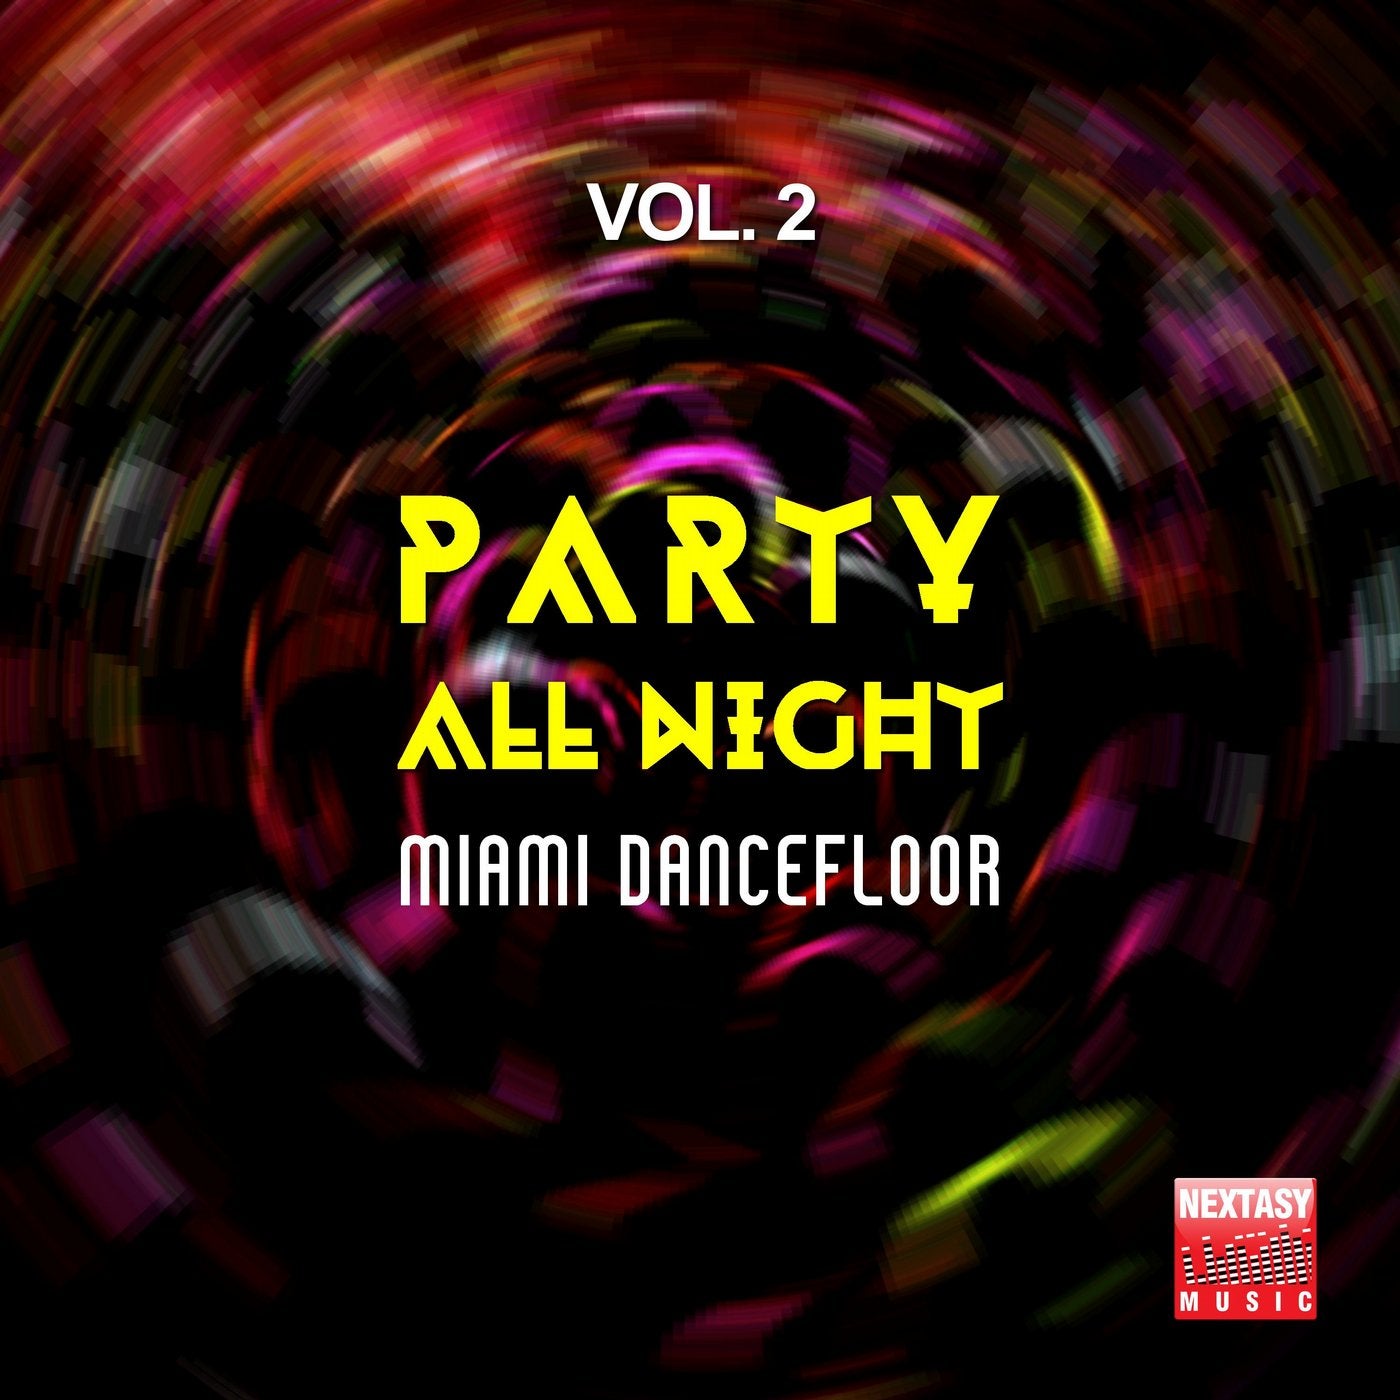 Party All Night, Vol. 2 (Miami Dancefloor)